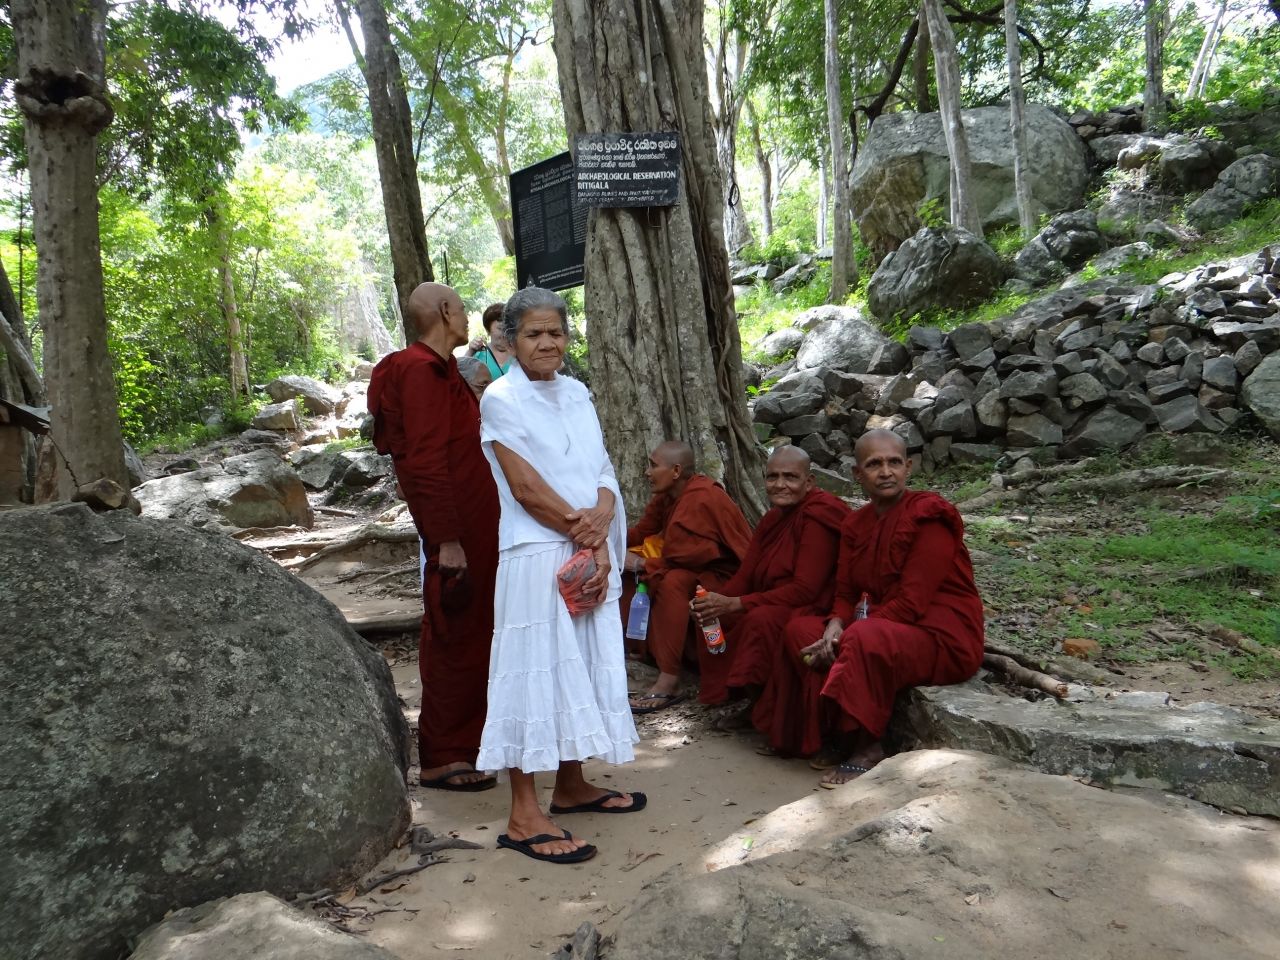 Монашки-женщины отличаются от мужчин тем, что у них всегда прикрыты плечи и руки. - Шри-Ланка 2017. Часть 3.